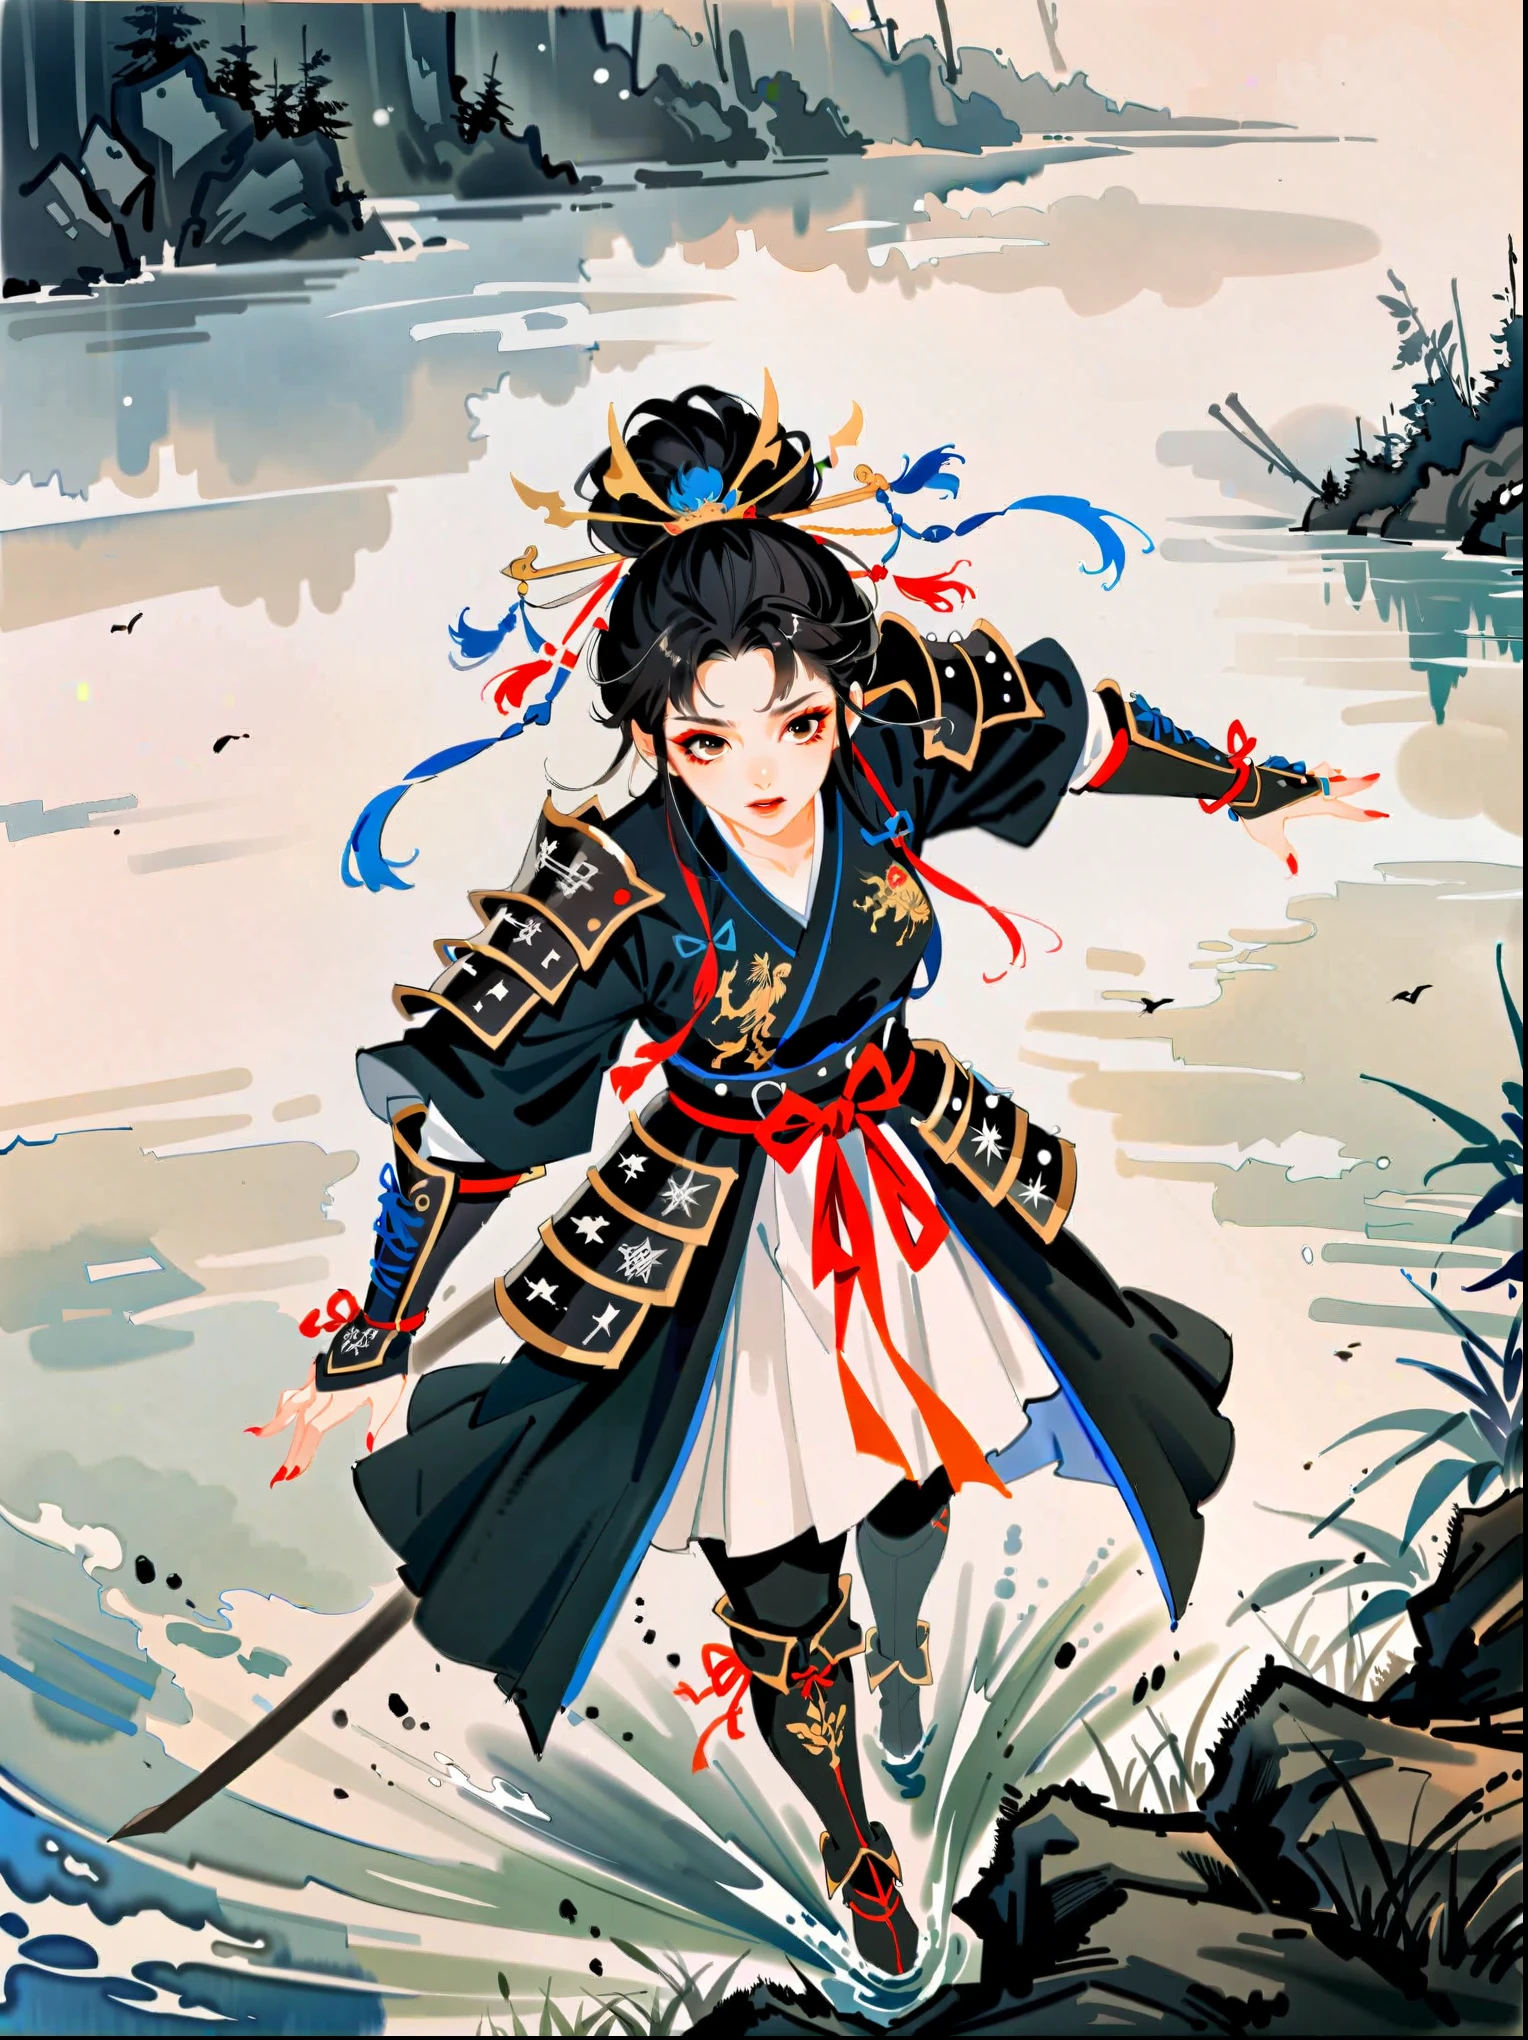 Arte conceitual em aquarela de Benedick Bana
(perspectiva de cima )
1 garota, avançando , rosto detalhado, mulher bonita em armadura de samurai de fantasia, caminhando pelo pântano enevoado no meio de vários campos de batalha do exército, pântanos, enevoado, nublado, vestindo uma túnica com as armas da família bordadas, muitos samurais lutando em segundo plano, obra de arte, melhor qualidade, alta qualidade, iluminação dramática, sombras